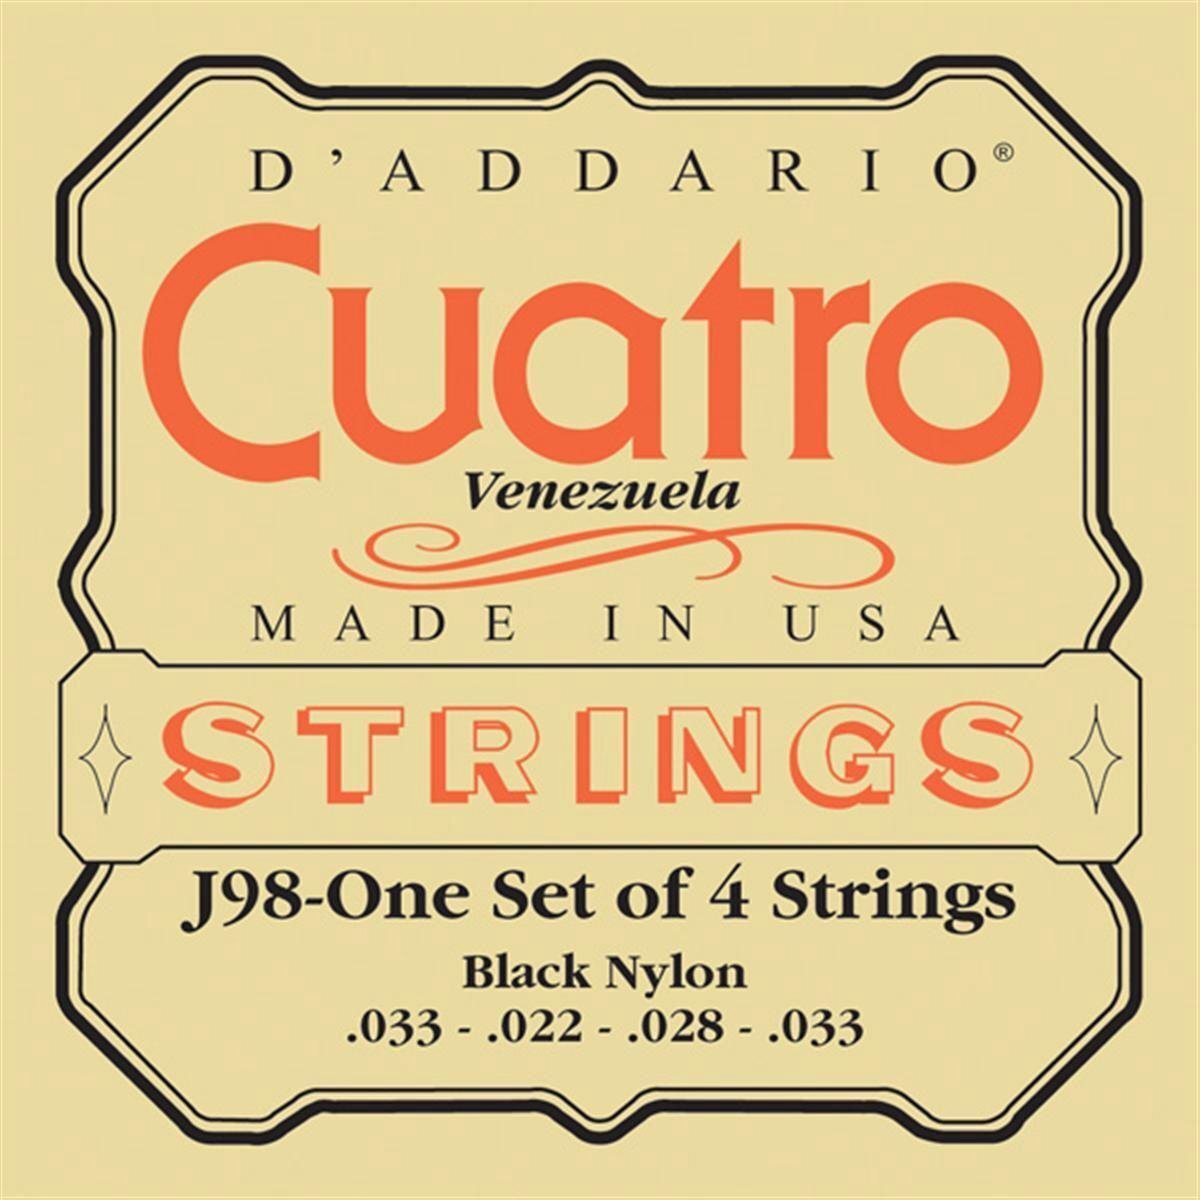 D'ADDARIO J98 Cuatro-Venezuela Strings